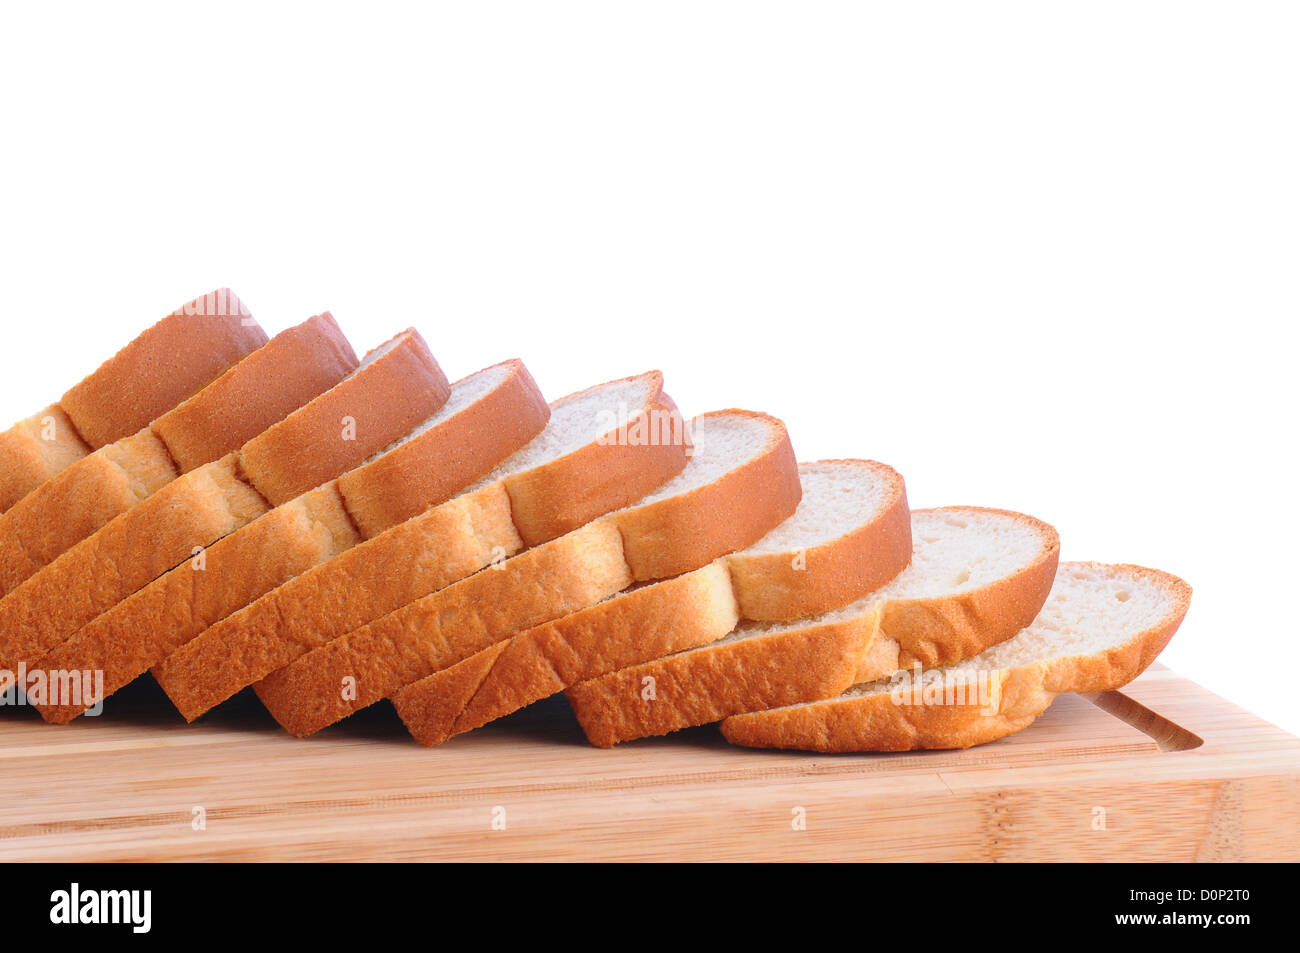 Libre de sa miche de pain blanc sur une planche à découper en bois. Tranches de pain sont ventilés. Banque D'Images